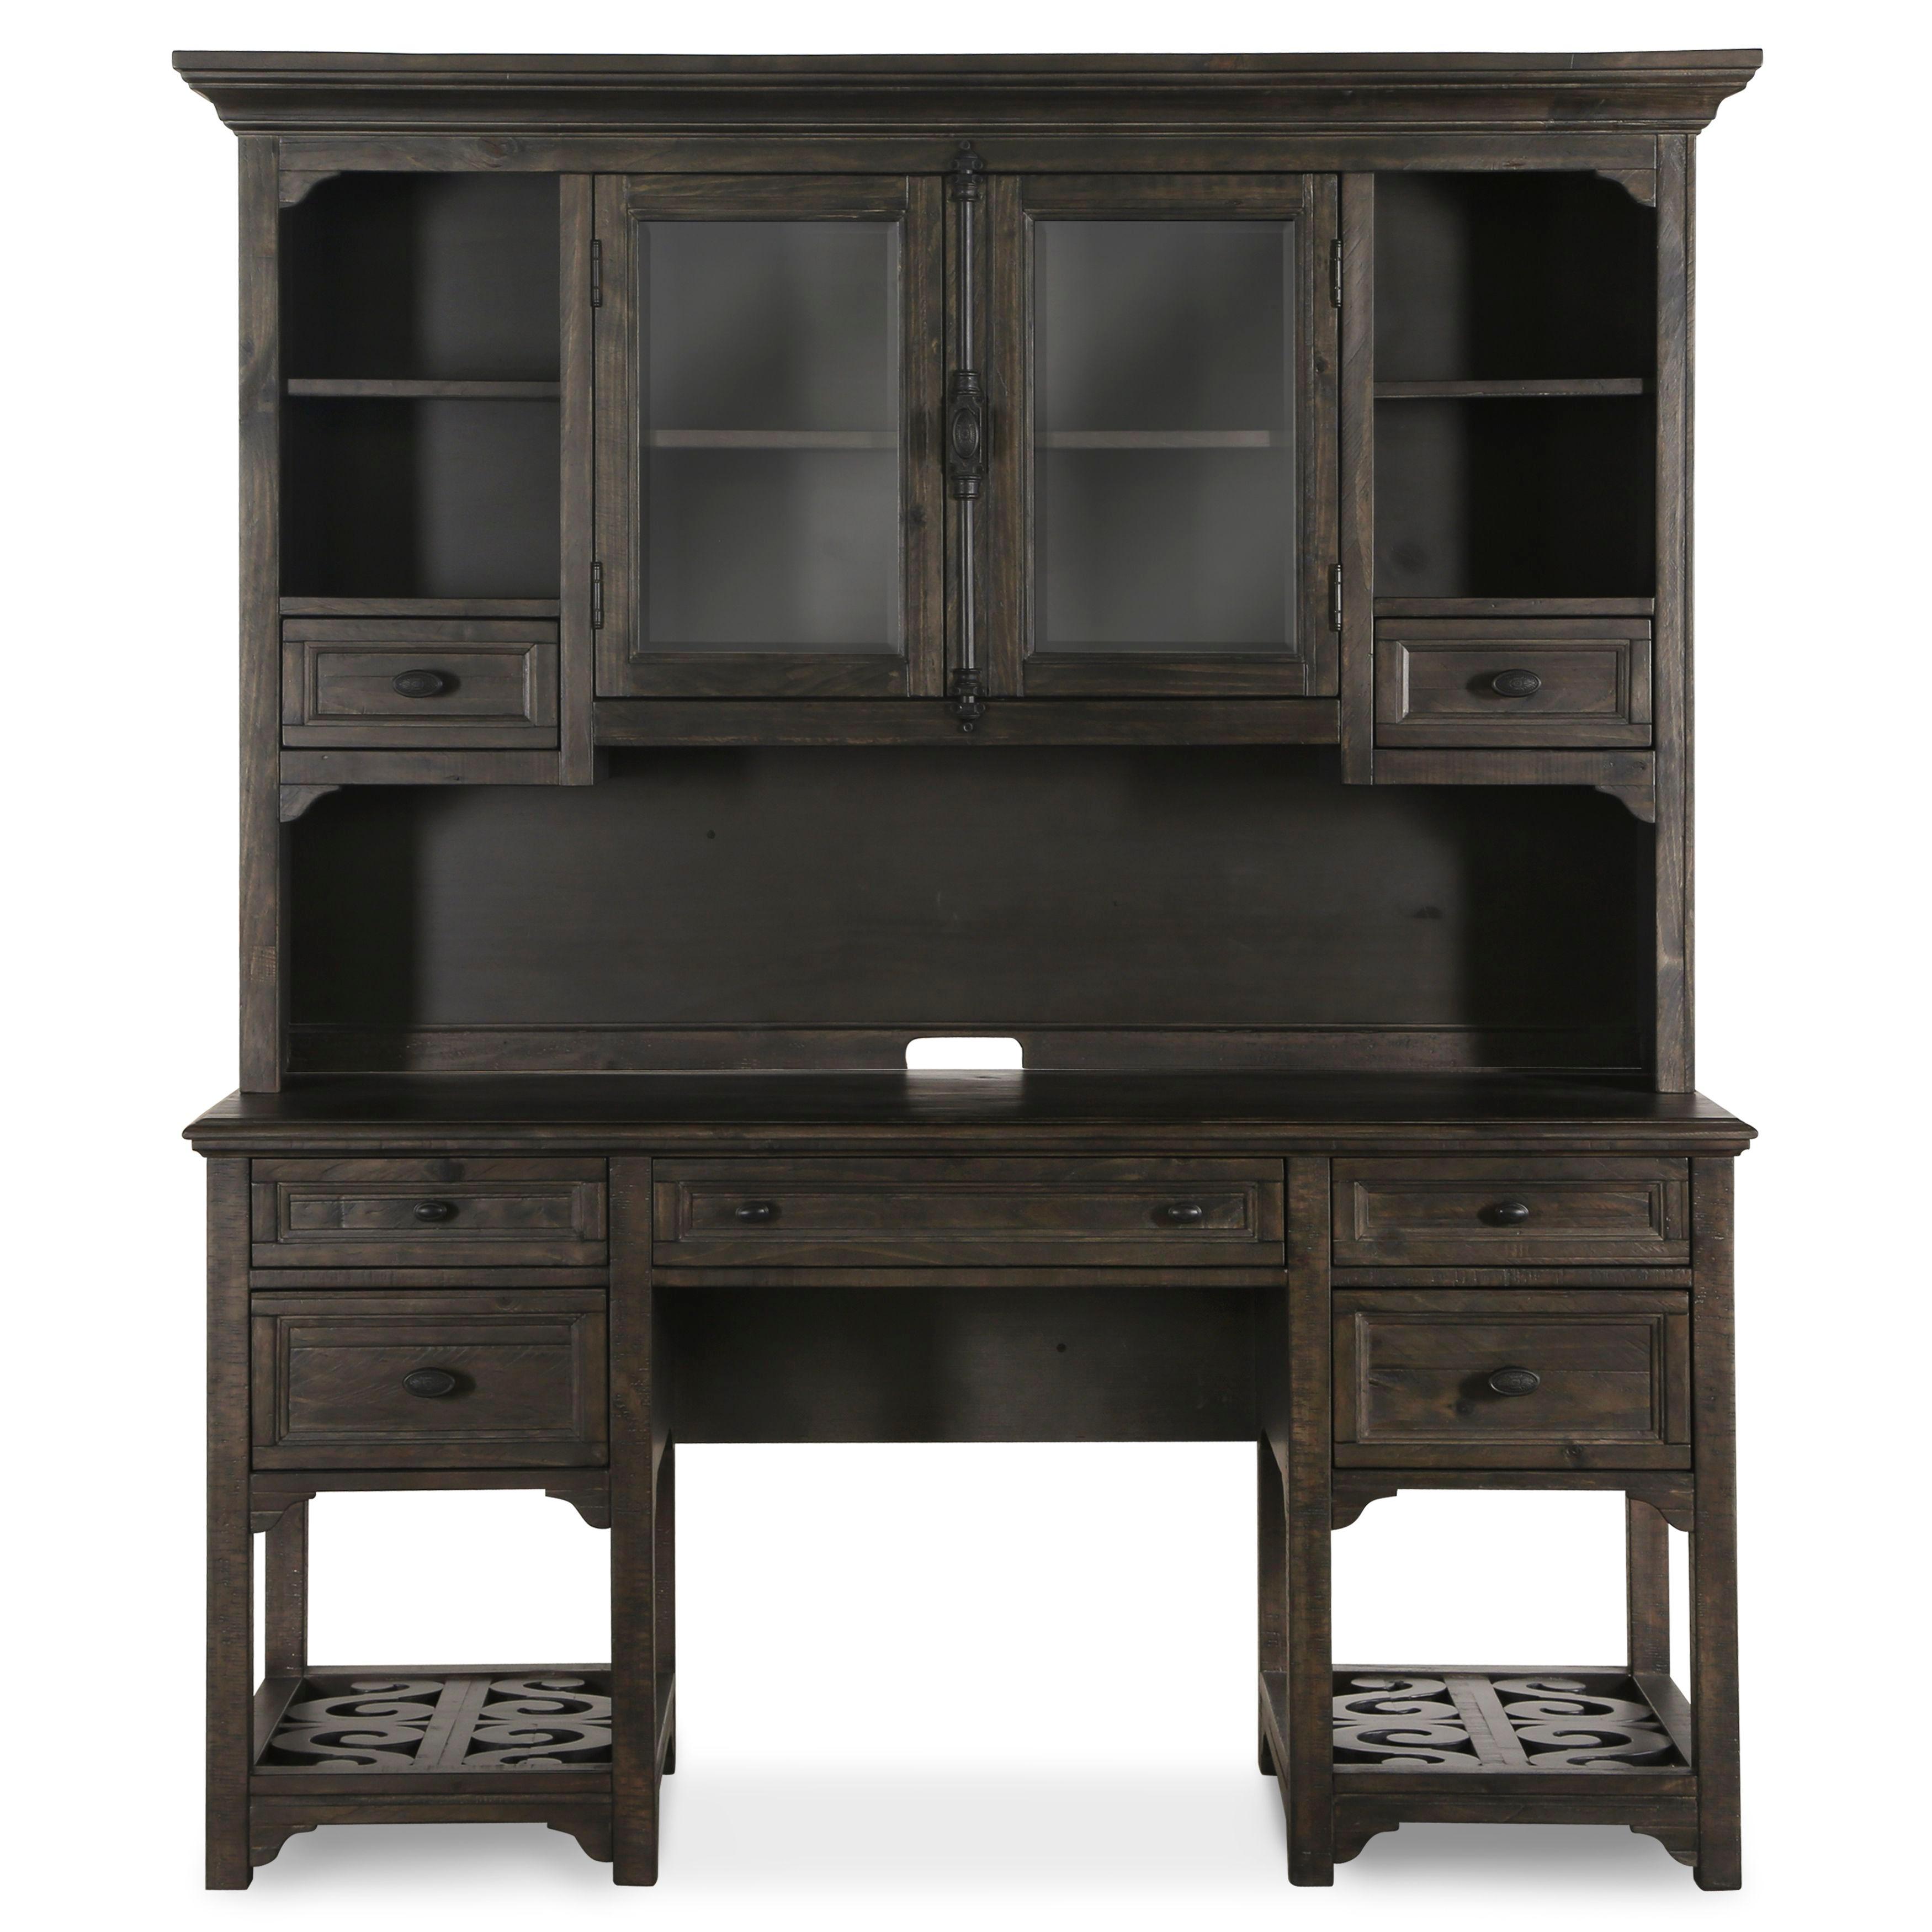 Magnussen Furniture - Bellamy - Desk With Hutch - Peppercorn - 5th Avenue Furniture